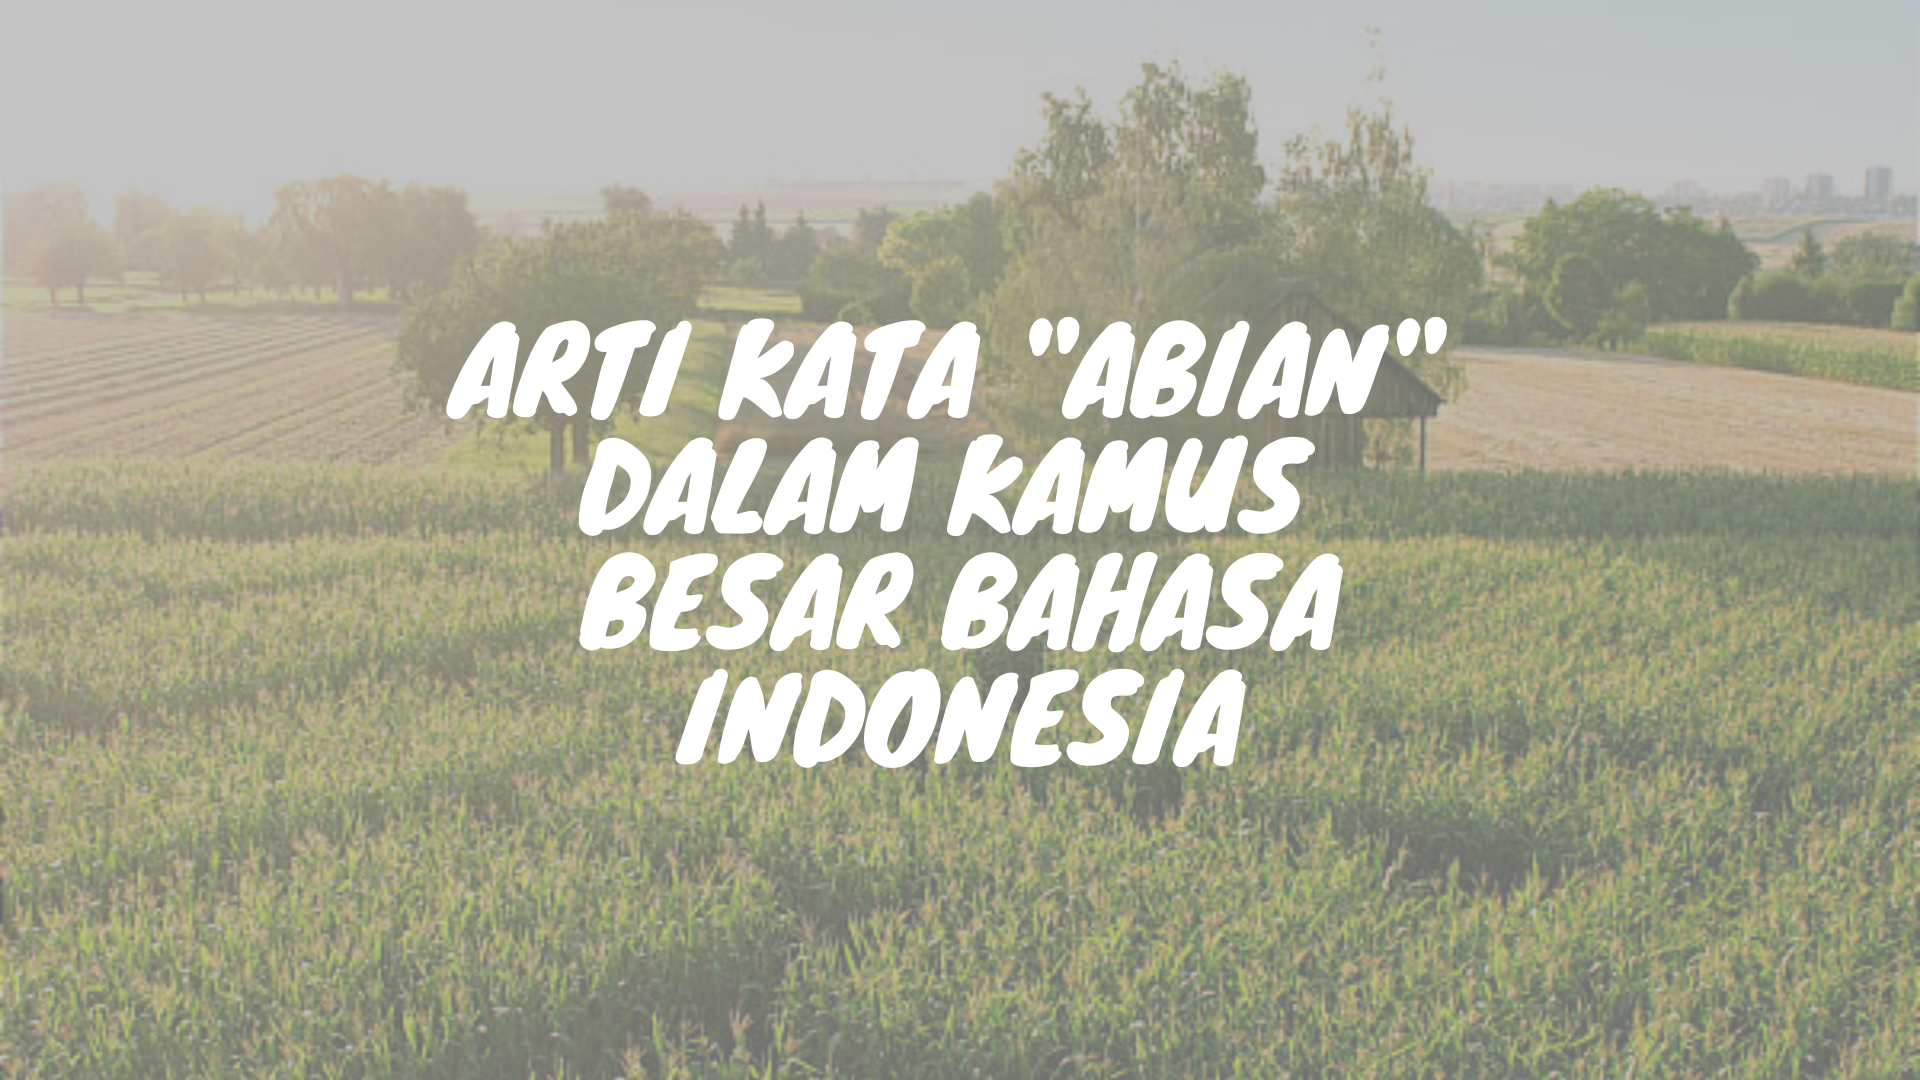 arti, maksud dan contoh kata abian bahasa Bali